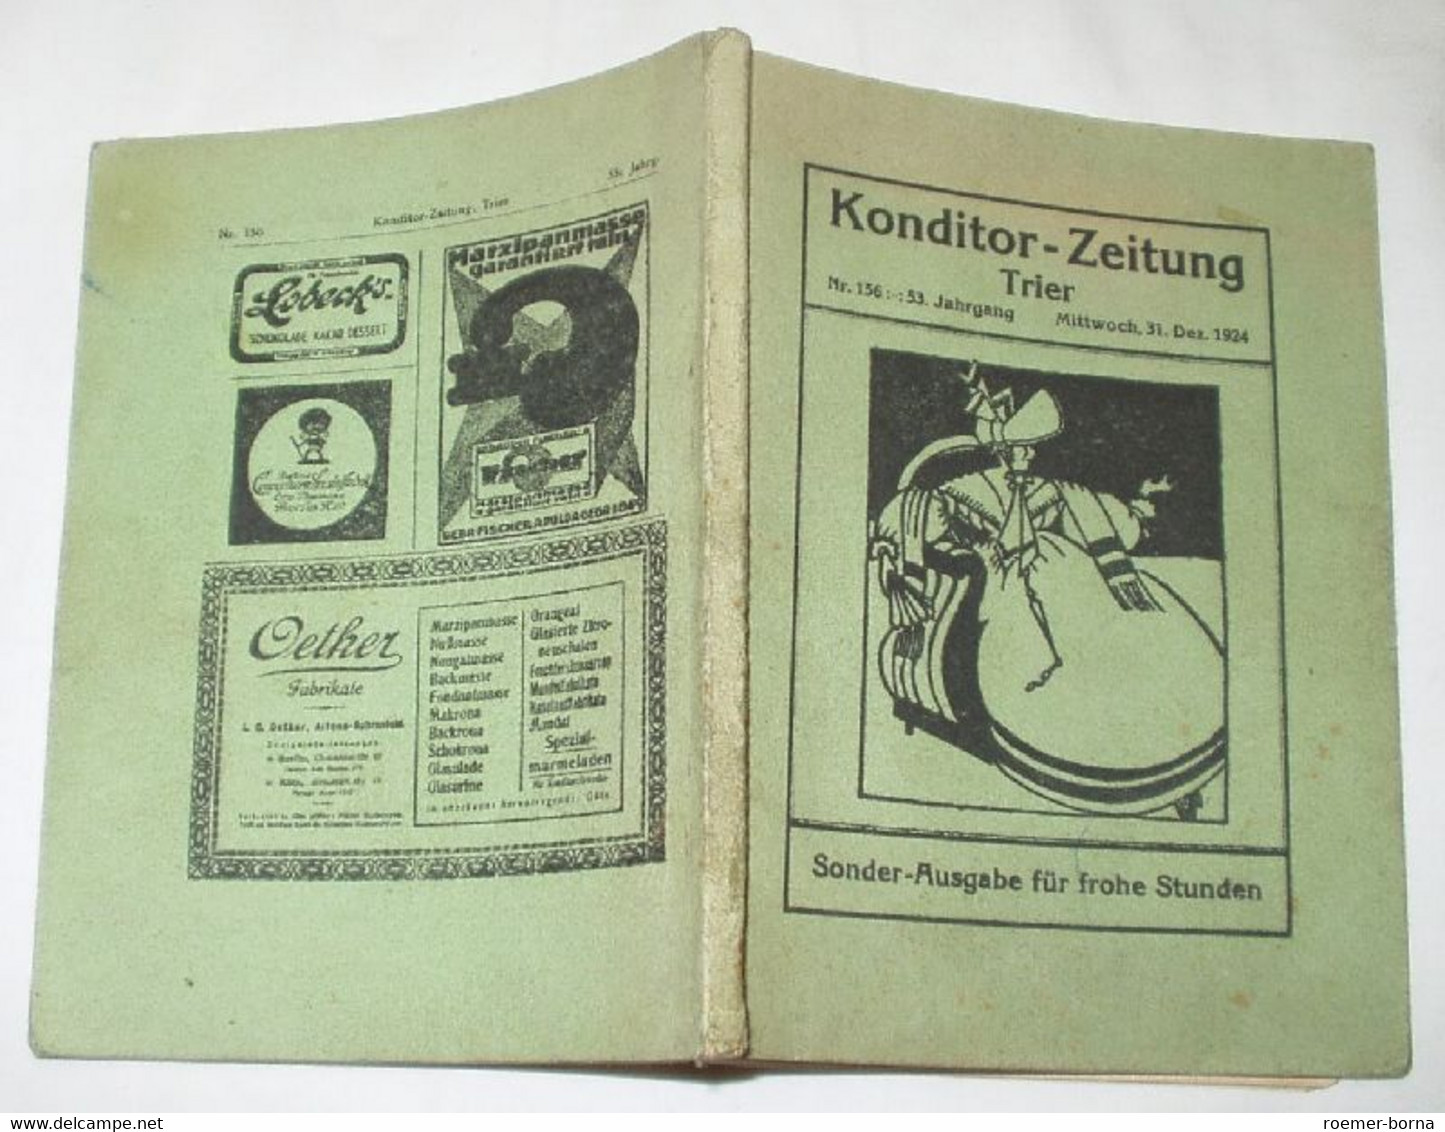 Konditor-Zeitung Trier Konditor-Lieder - Humour